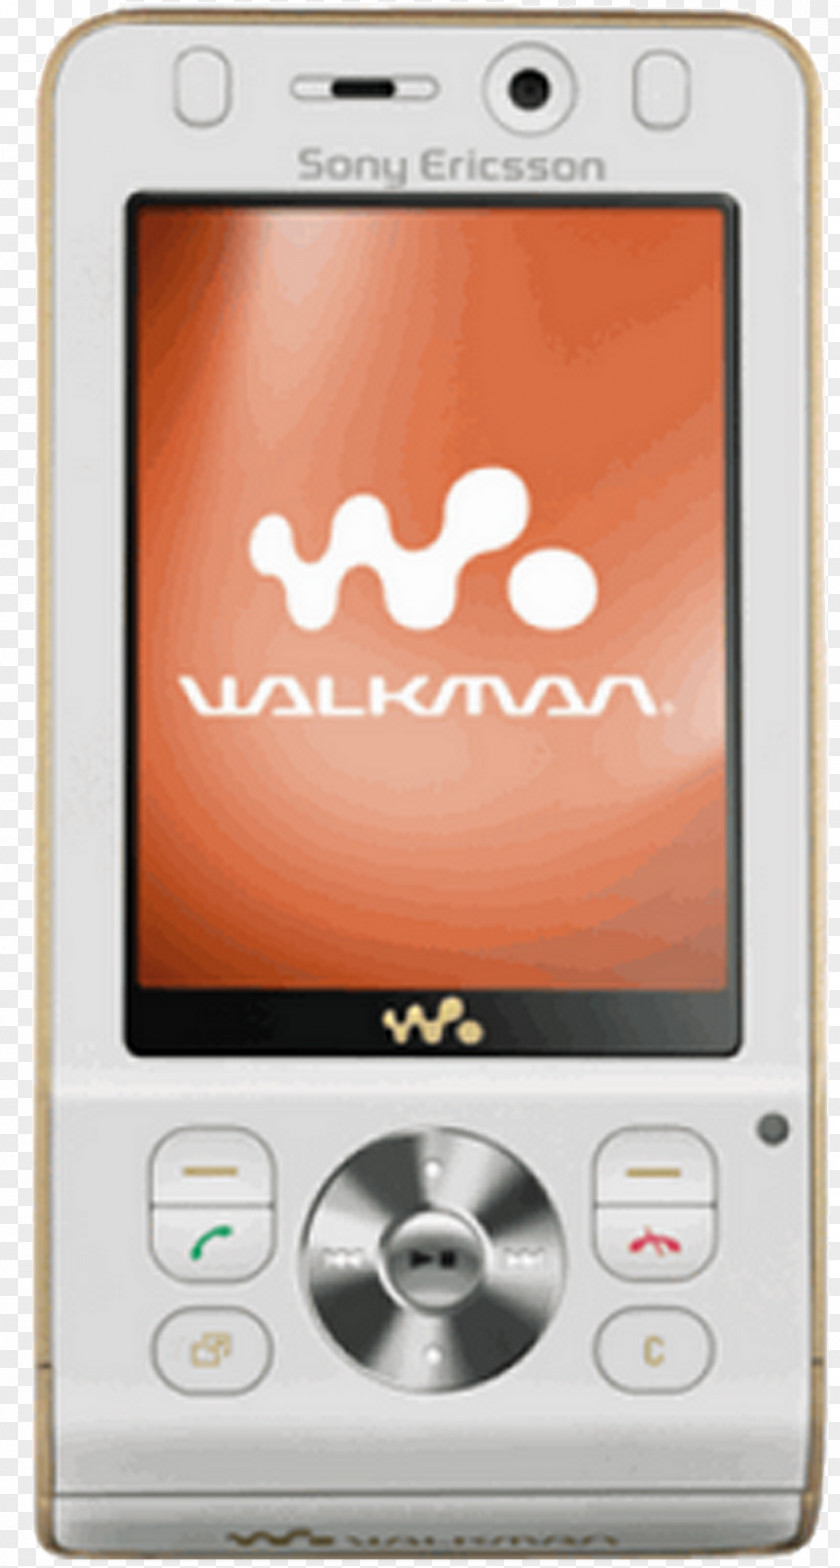 Sony Ericsson W580i W910i W302 Walkman W595 Live With PNG